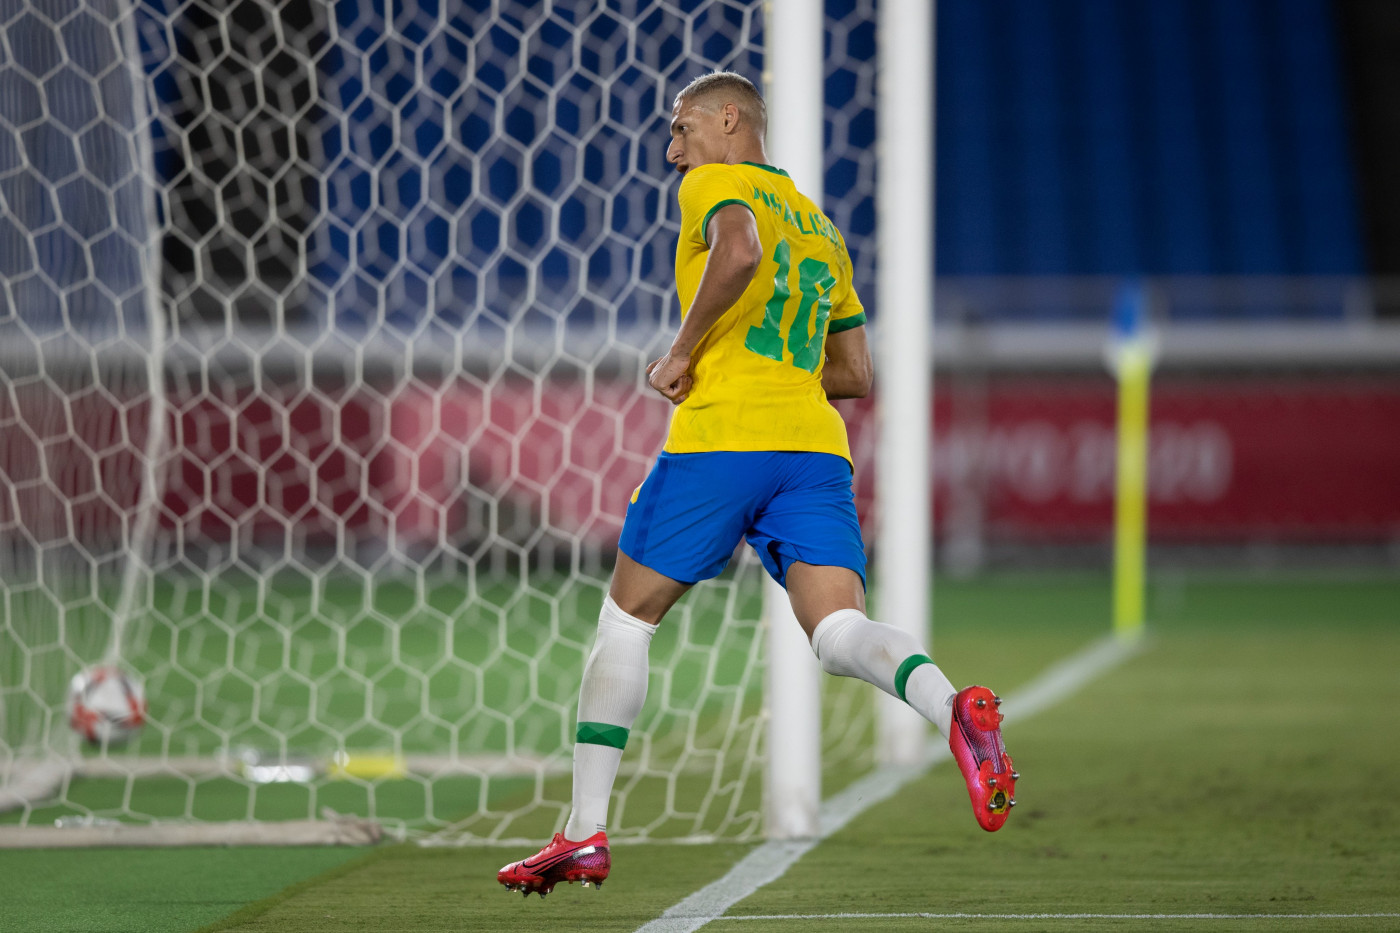 Brasil vence Colômbia e assume liderança do grupo B no futebol dos Jogos Pan -Americanos